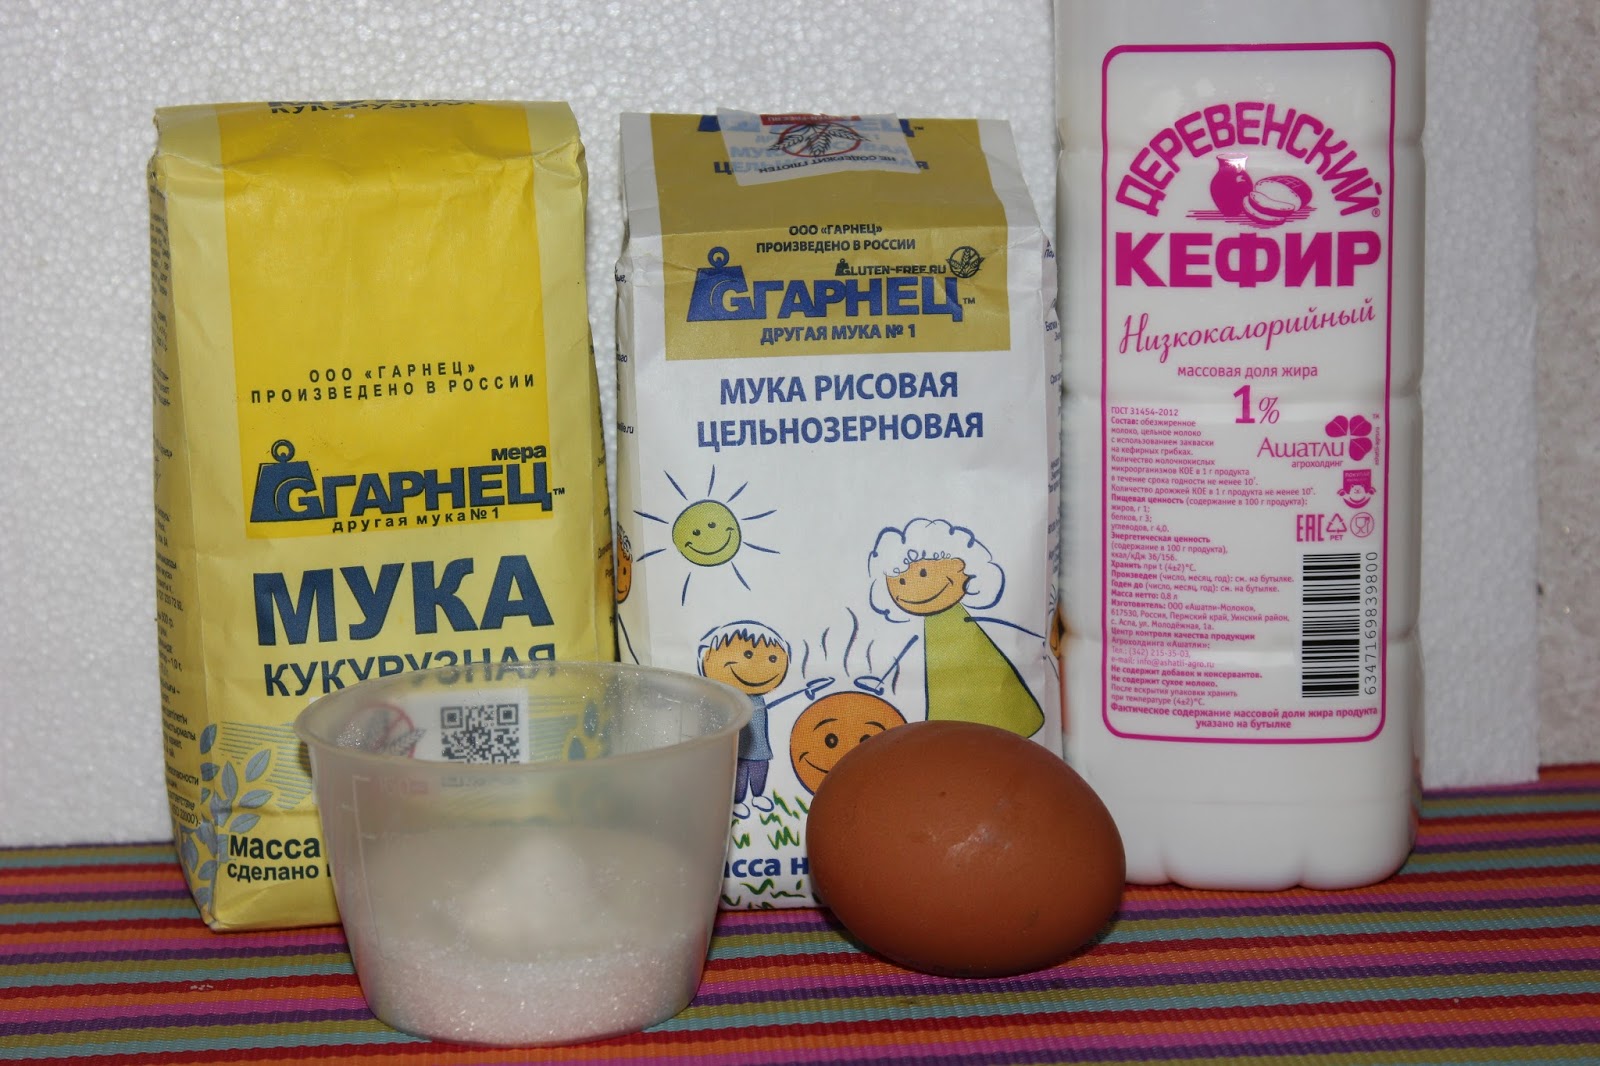 Кефир яйцо сахар мука сода. Кефир и мука. Кефир сахар сода мука яйцо. Кефир яйцо мука соль. Рисовая мука и кефир.